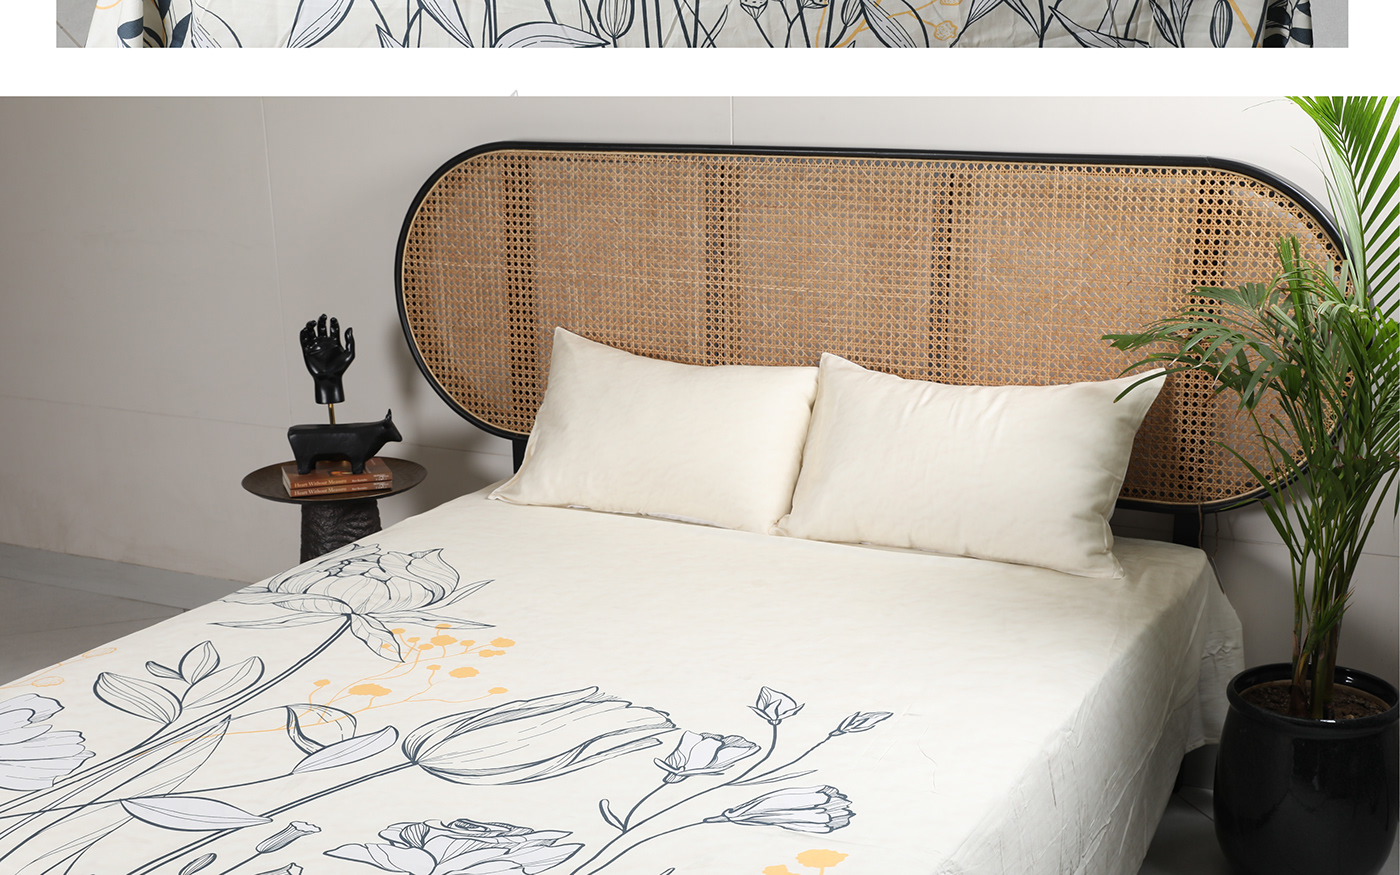 textile design Digital Art  wall art Wall Mural bed linen Collection